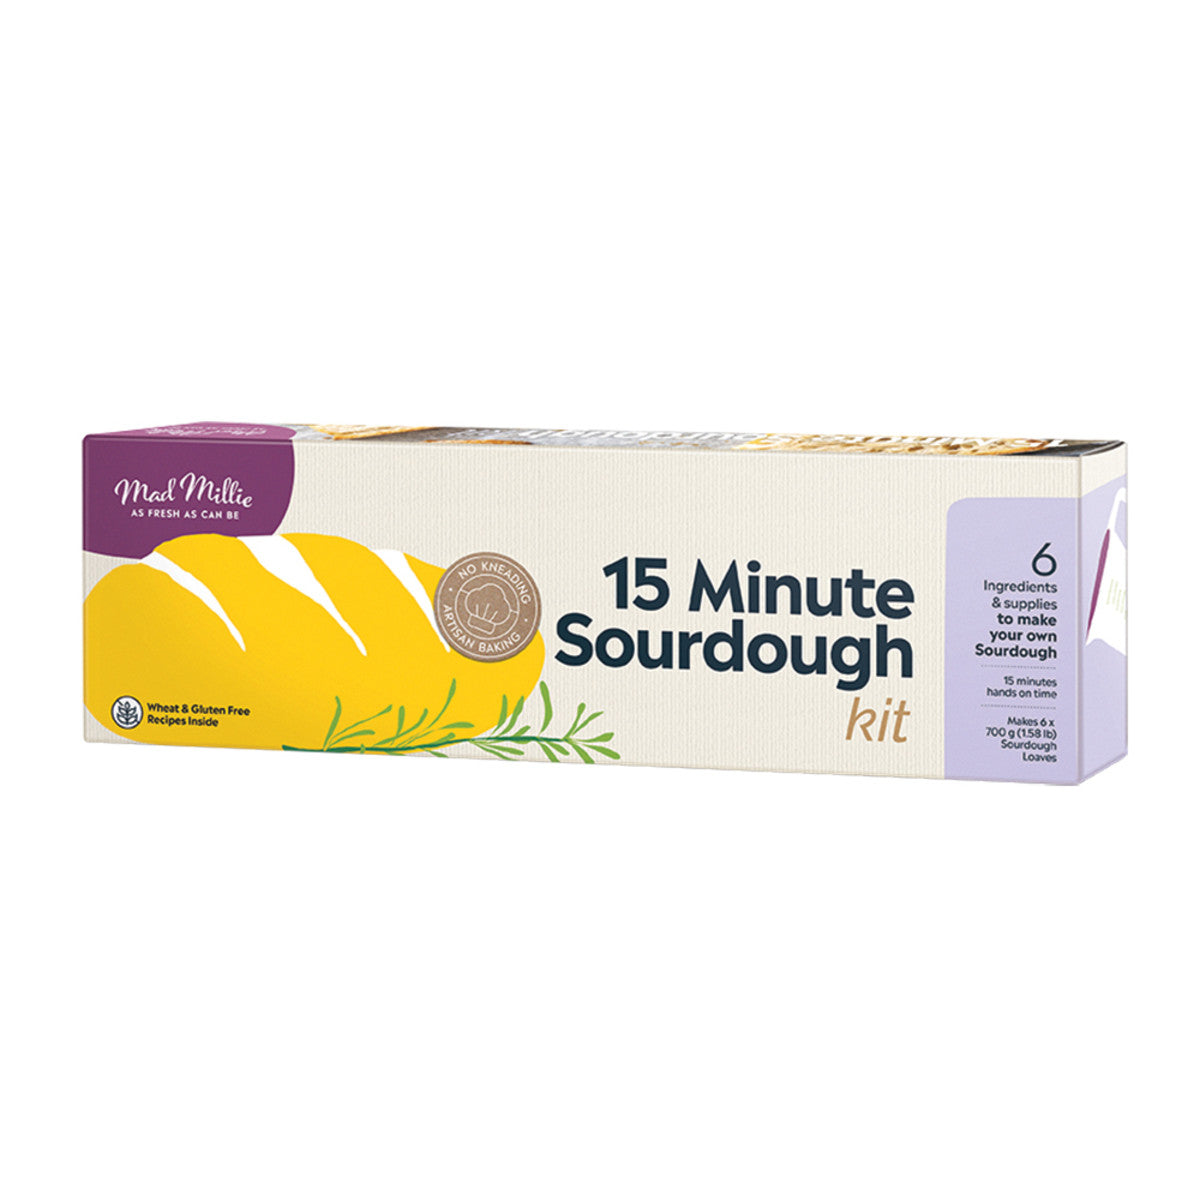 Mad Millie - 15 Minute Sourdough Kit